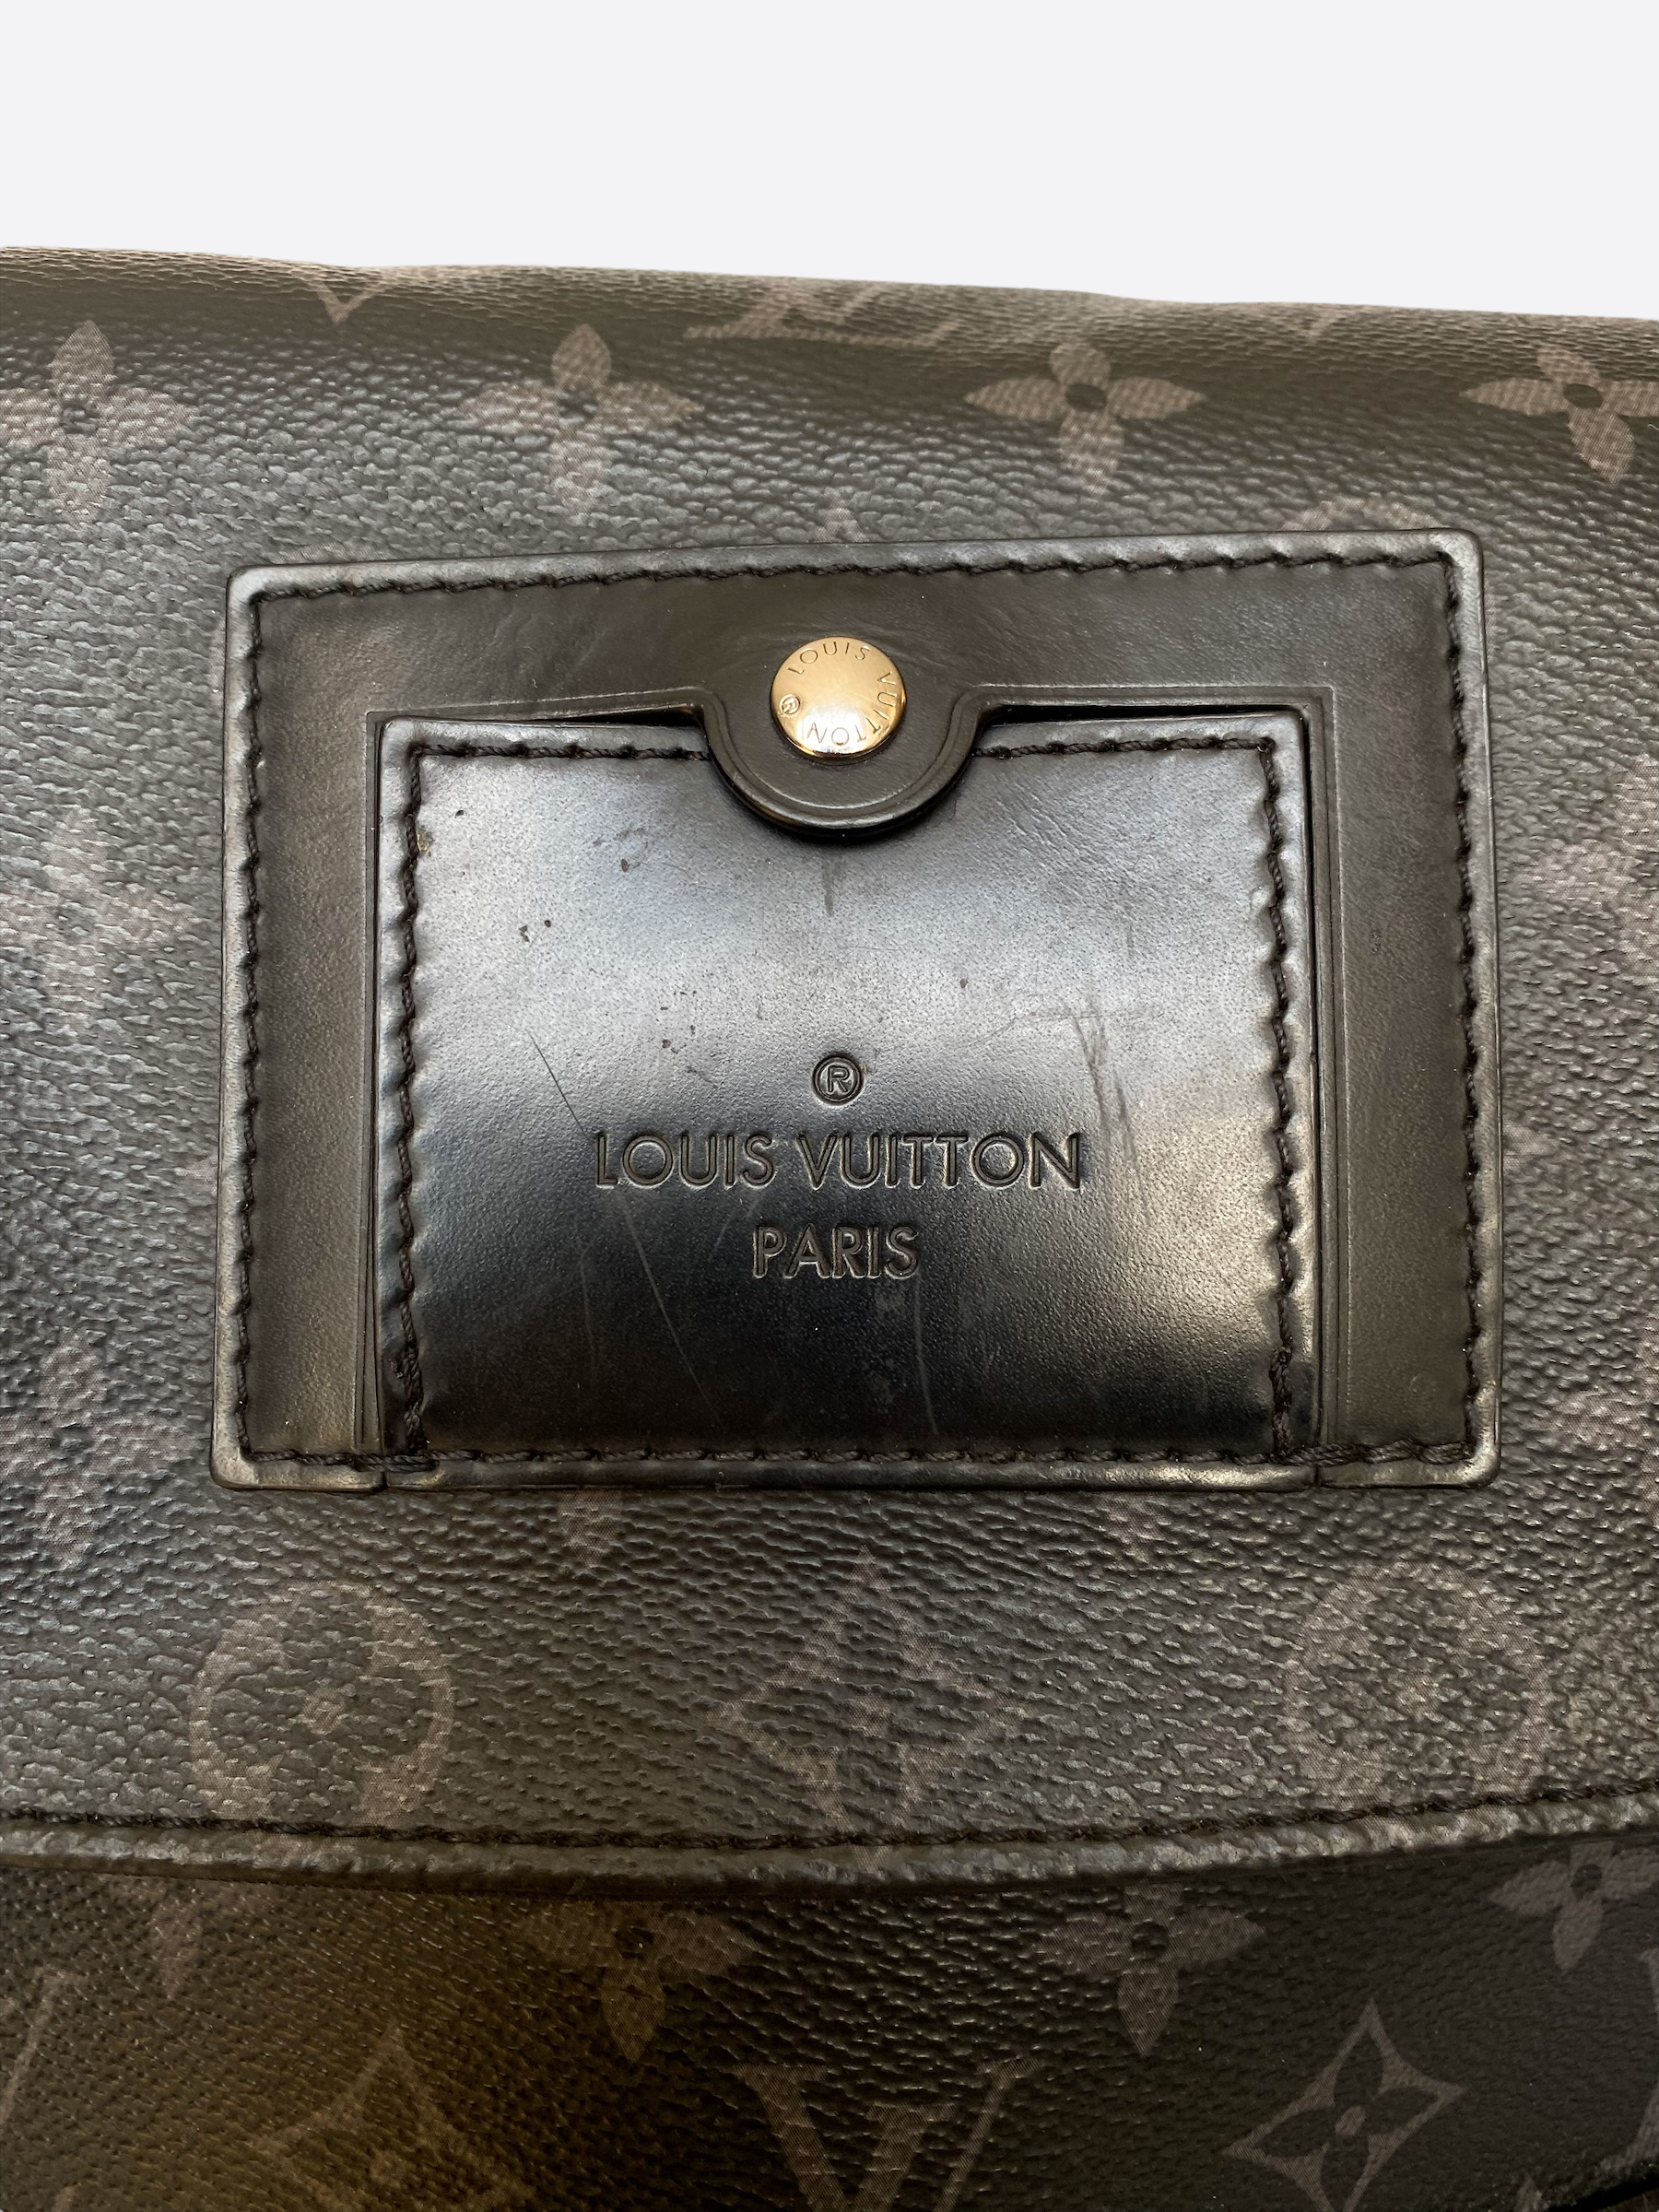 Sac Messenger Pm Voyager Louis Vuitton Bag